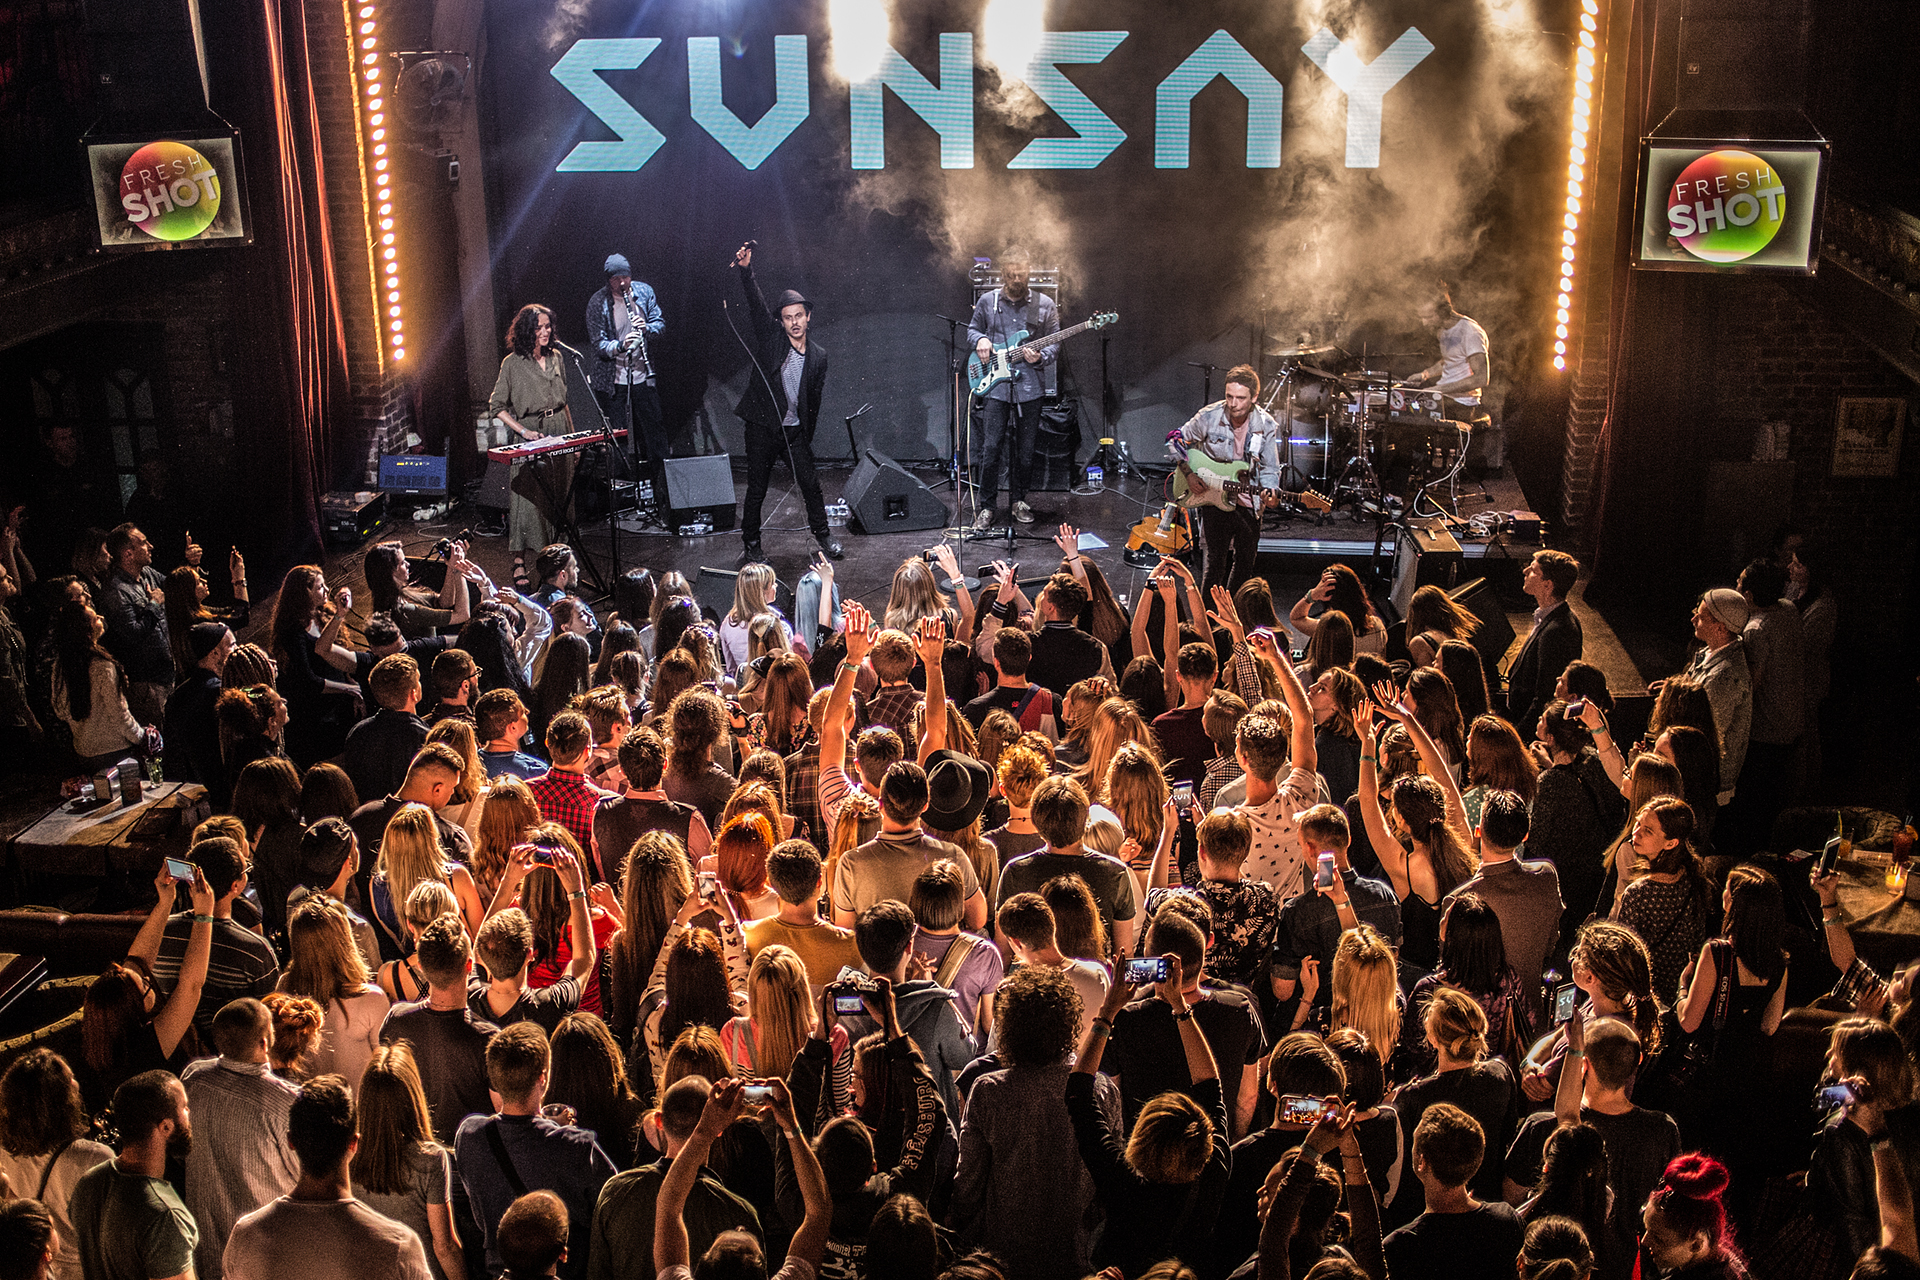 концерт SunSay в Caribbean Club Concert Hall, Киев